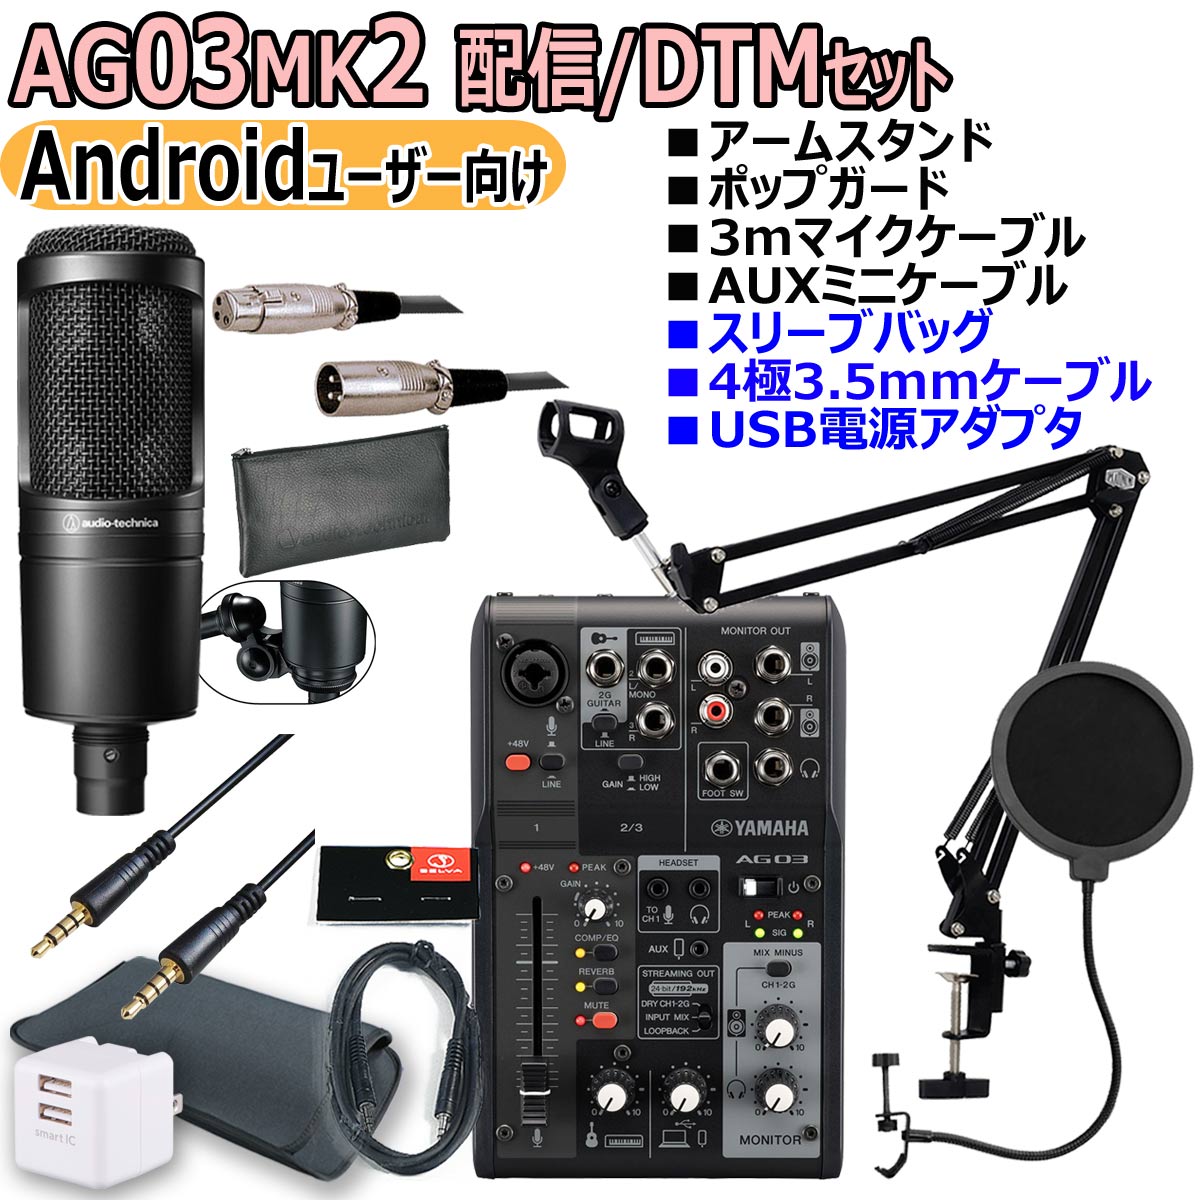 【あす楽対象商品】YAMAHA / AG03MK2 BLACK AT2020 Androidユーザー向け 配信/DTMセット【PNG】